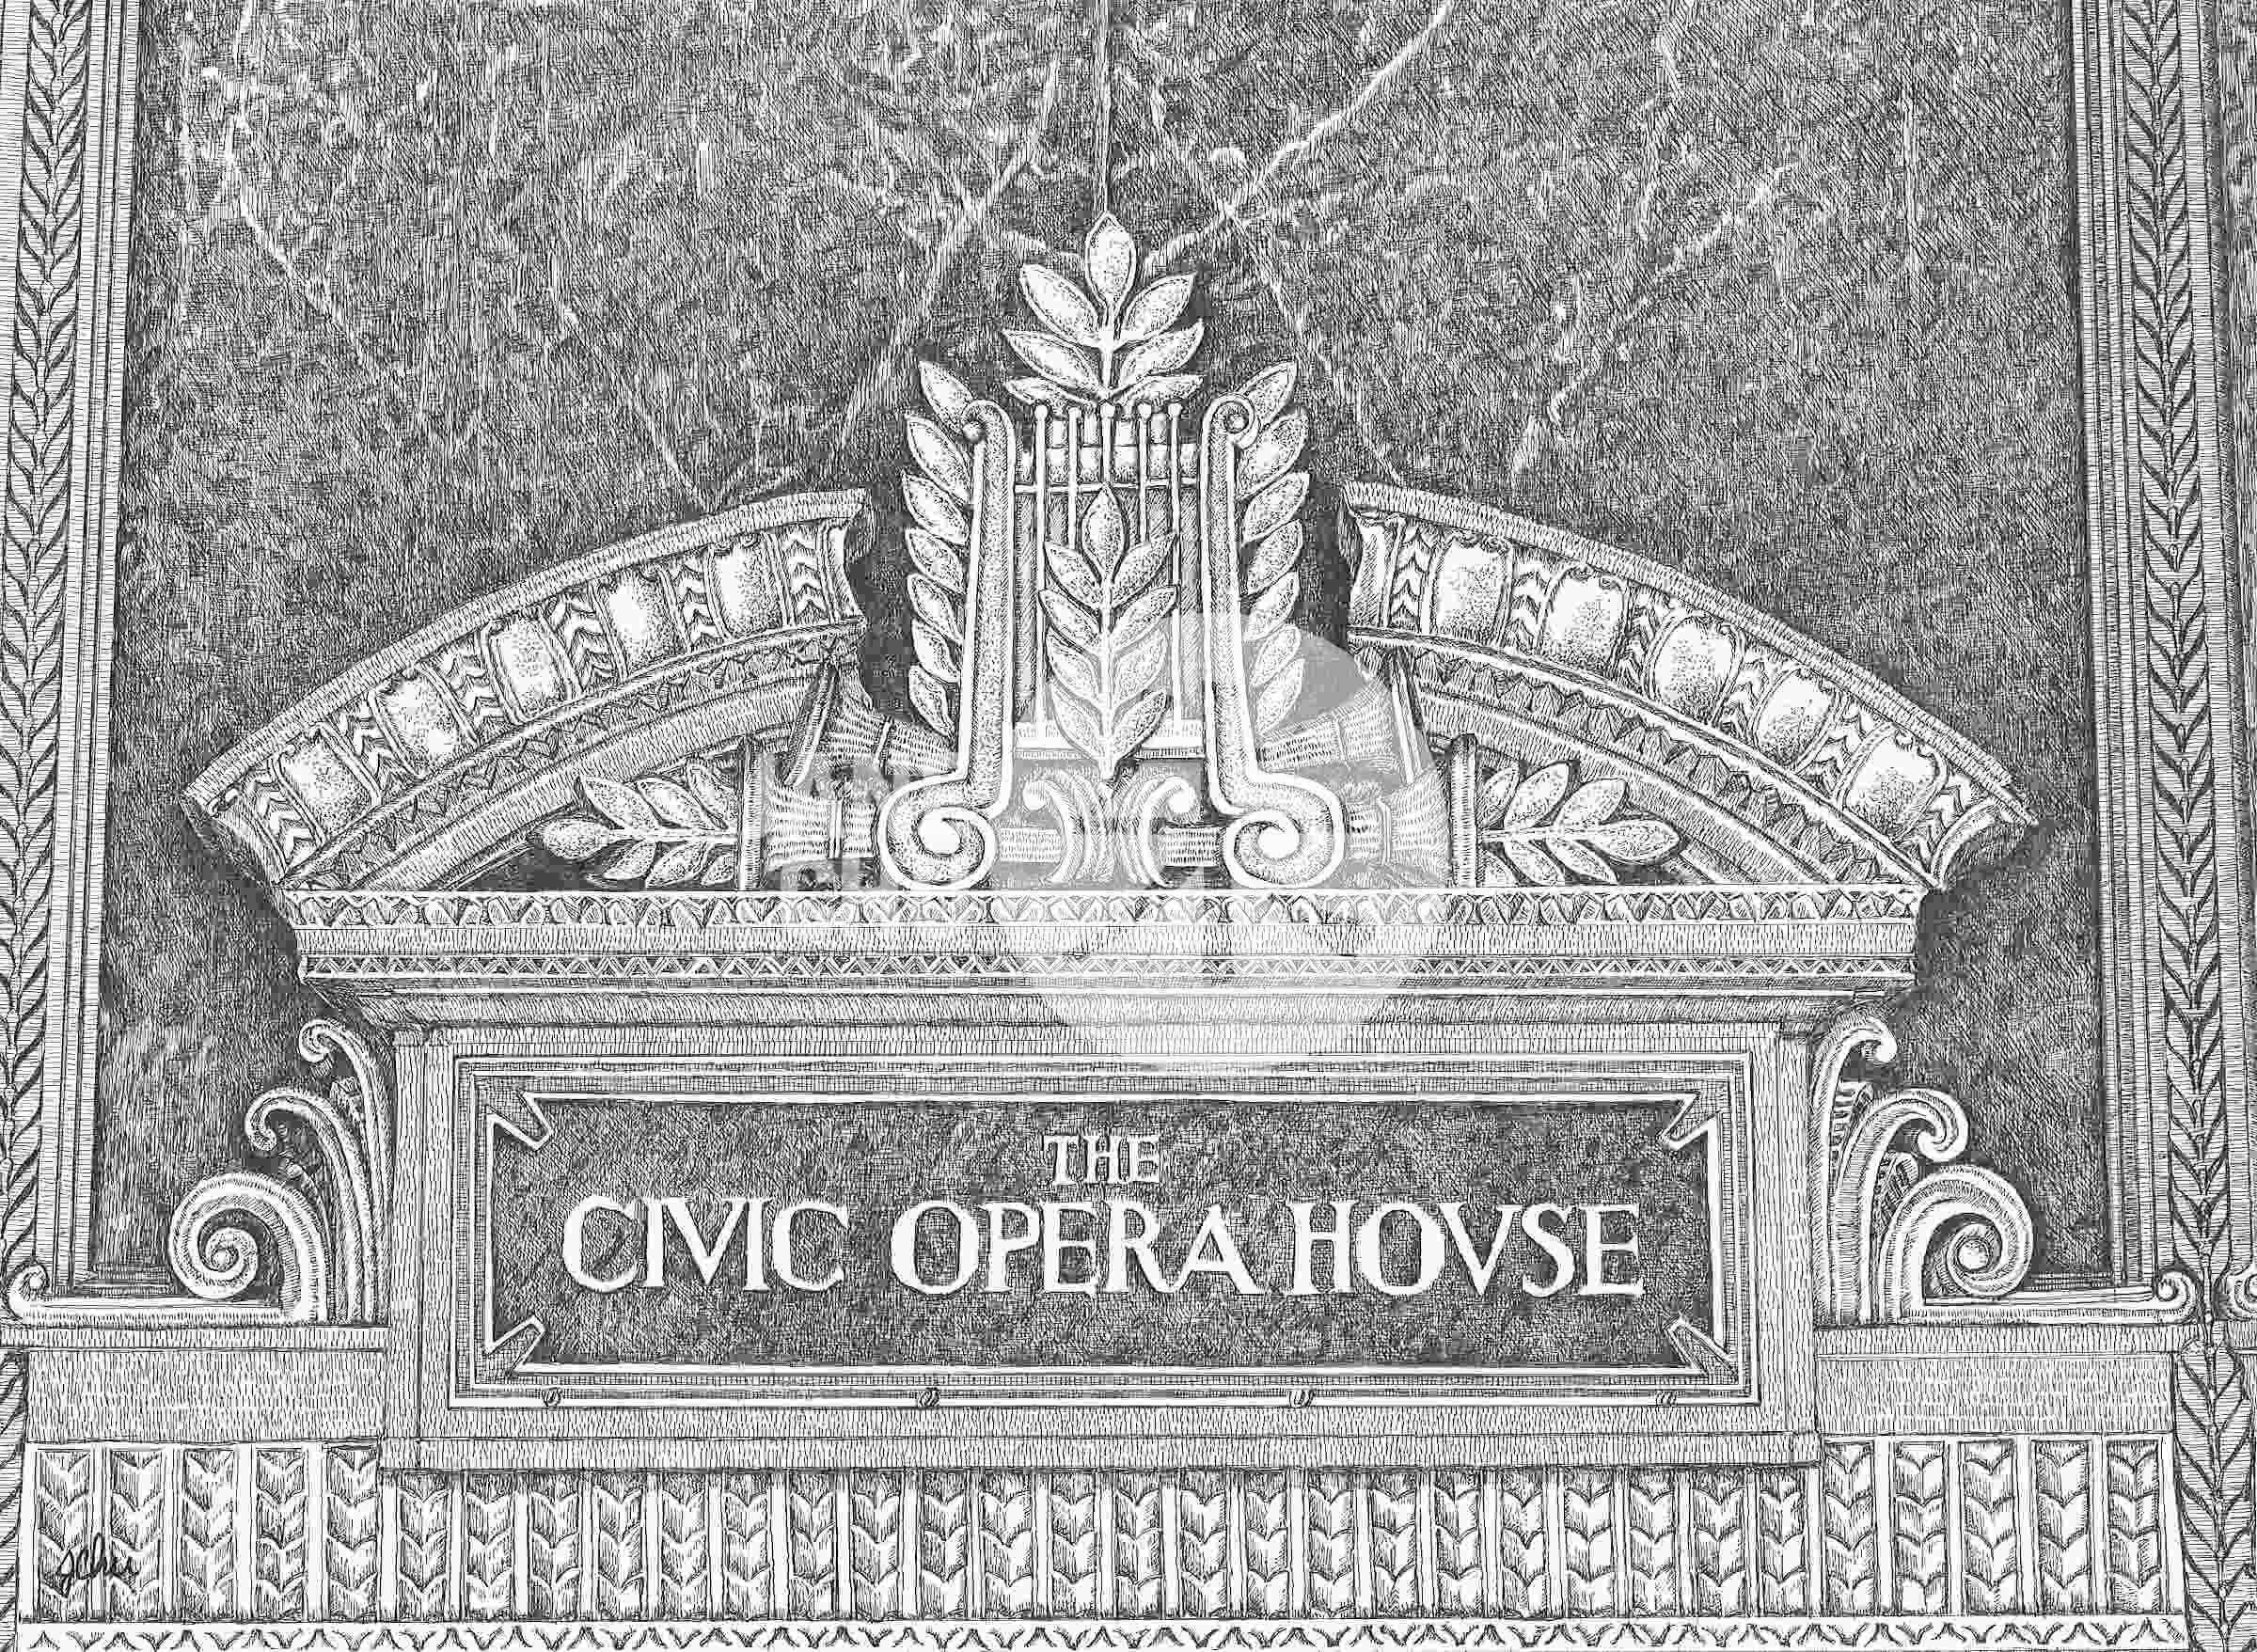 Civic Opera House by Jane Chu